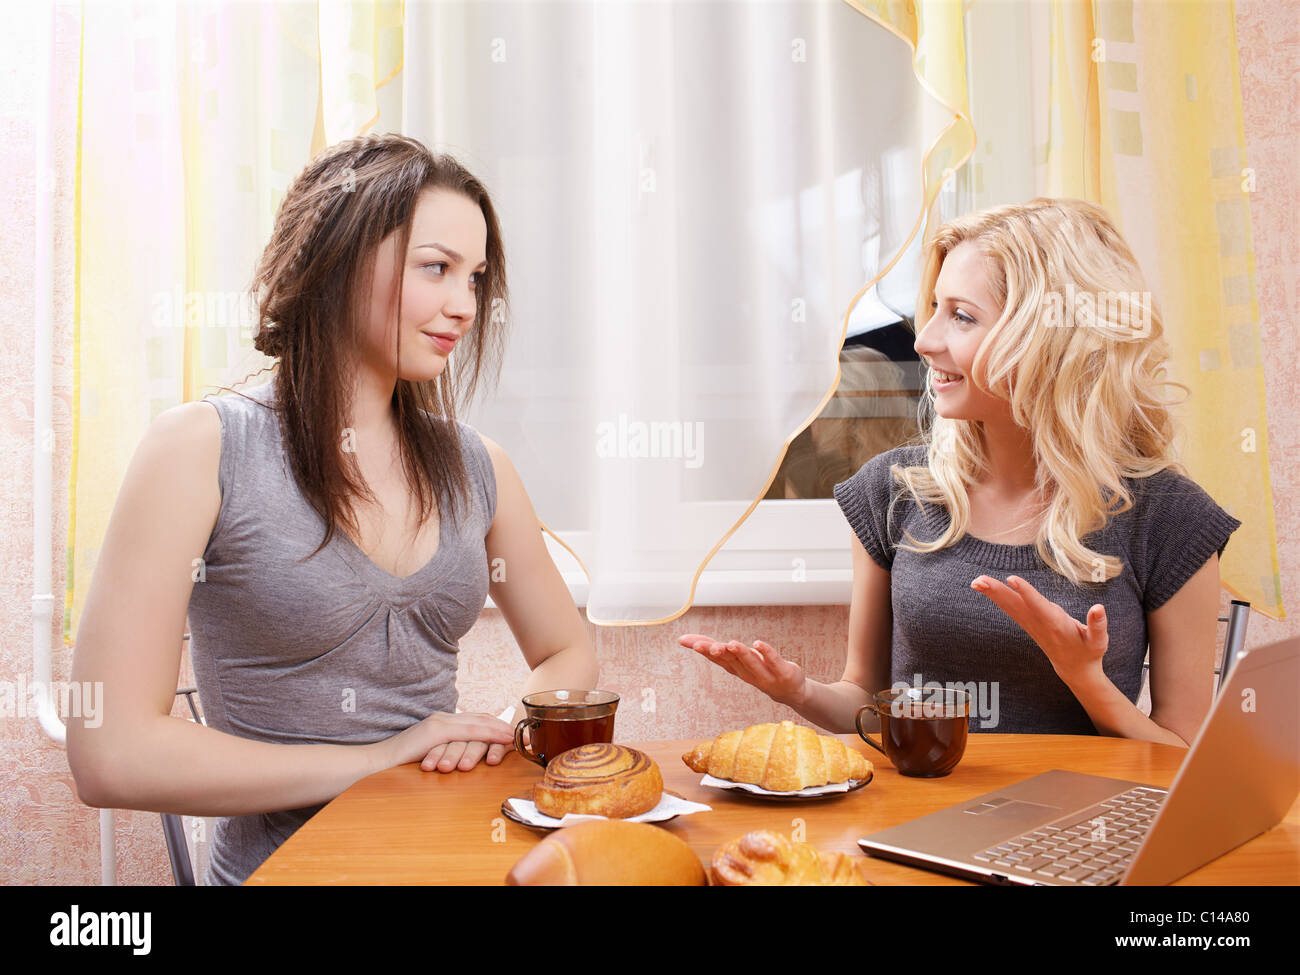 Есть жена что положила. Две девушки за столом. Подруги за столом. Чаепитие с подругами. Две женщины сидят за столом.